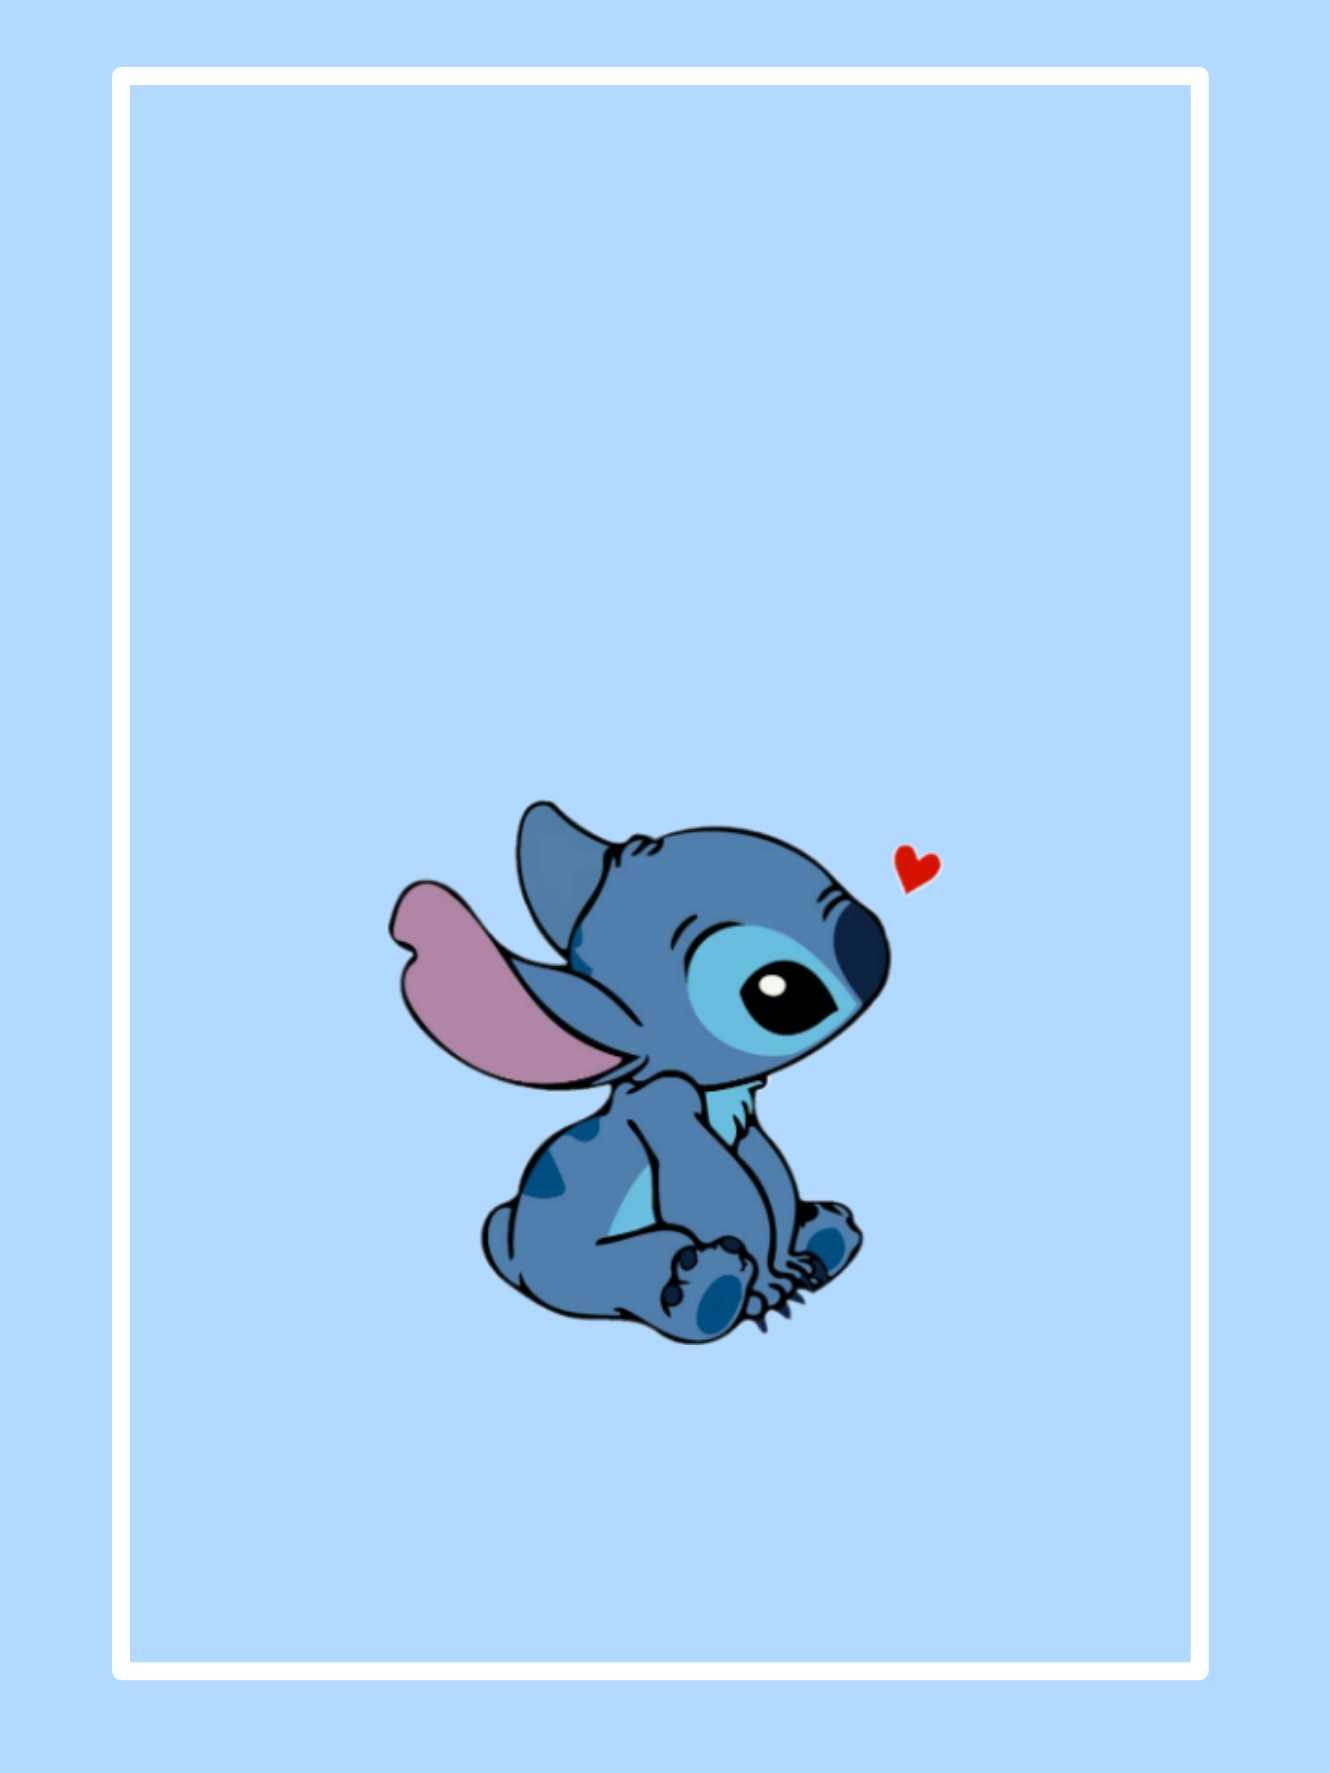 Cute Lilo and Stitch Wallpaper